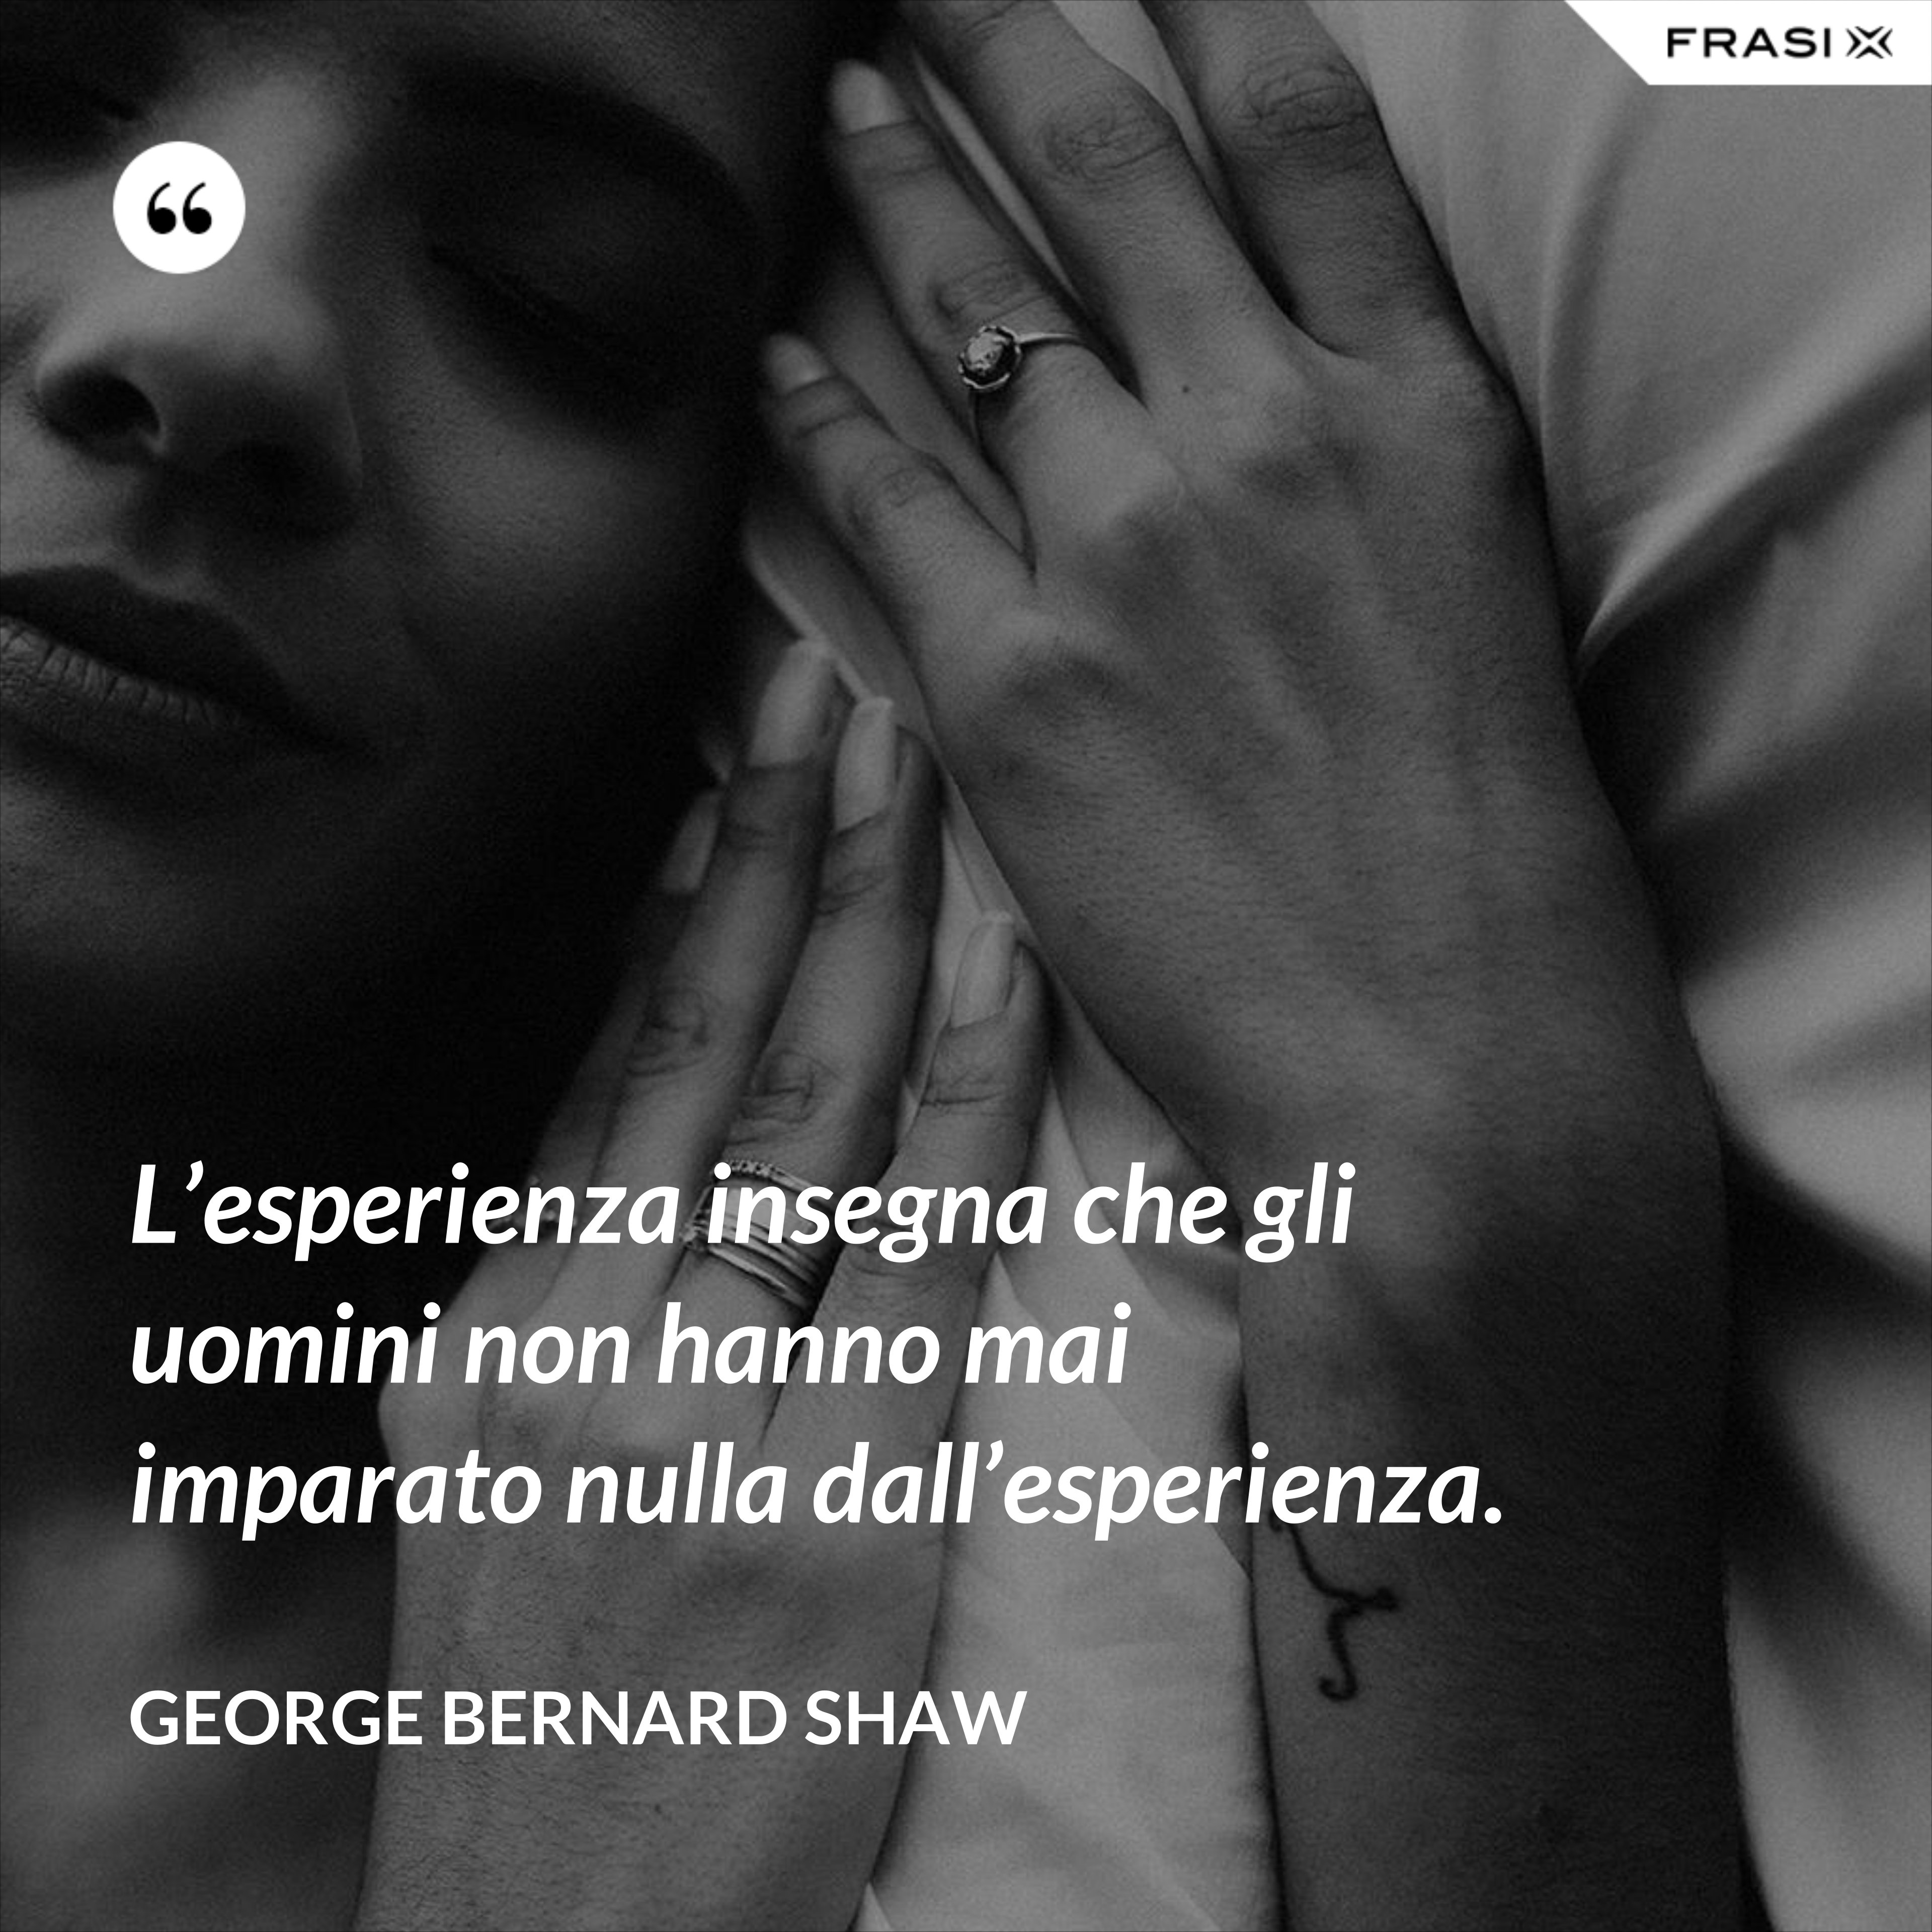 L’esperienza insegna che gli uomini non hanno mai imparato nulla dall’esperienza. - George Bernard Shaw